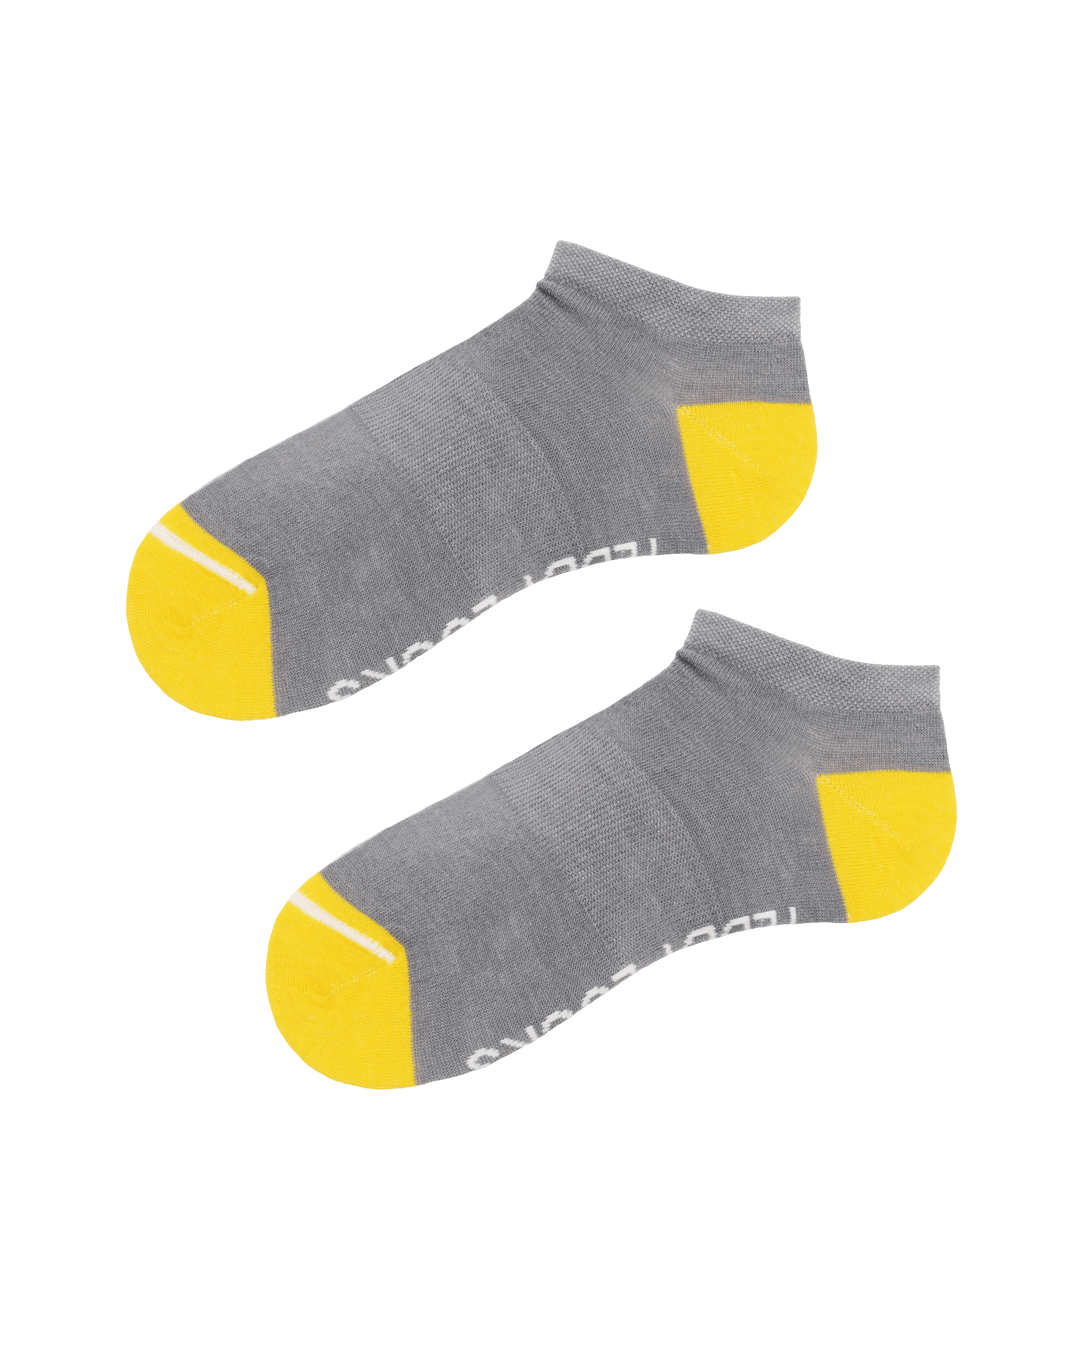 Light grey low socks. Ankle socks for men. Women's sustainable socks.